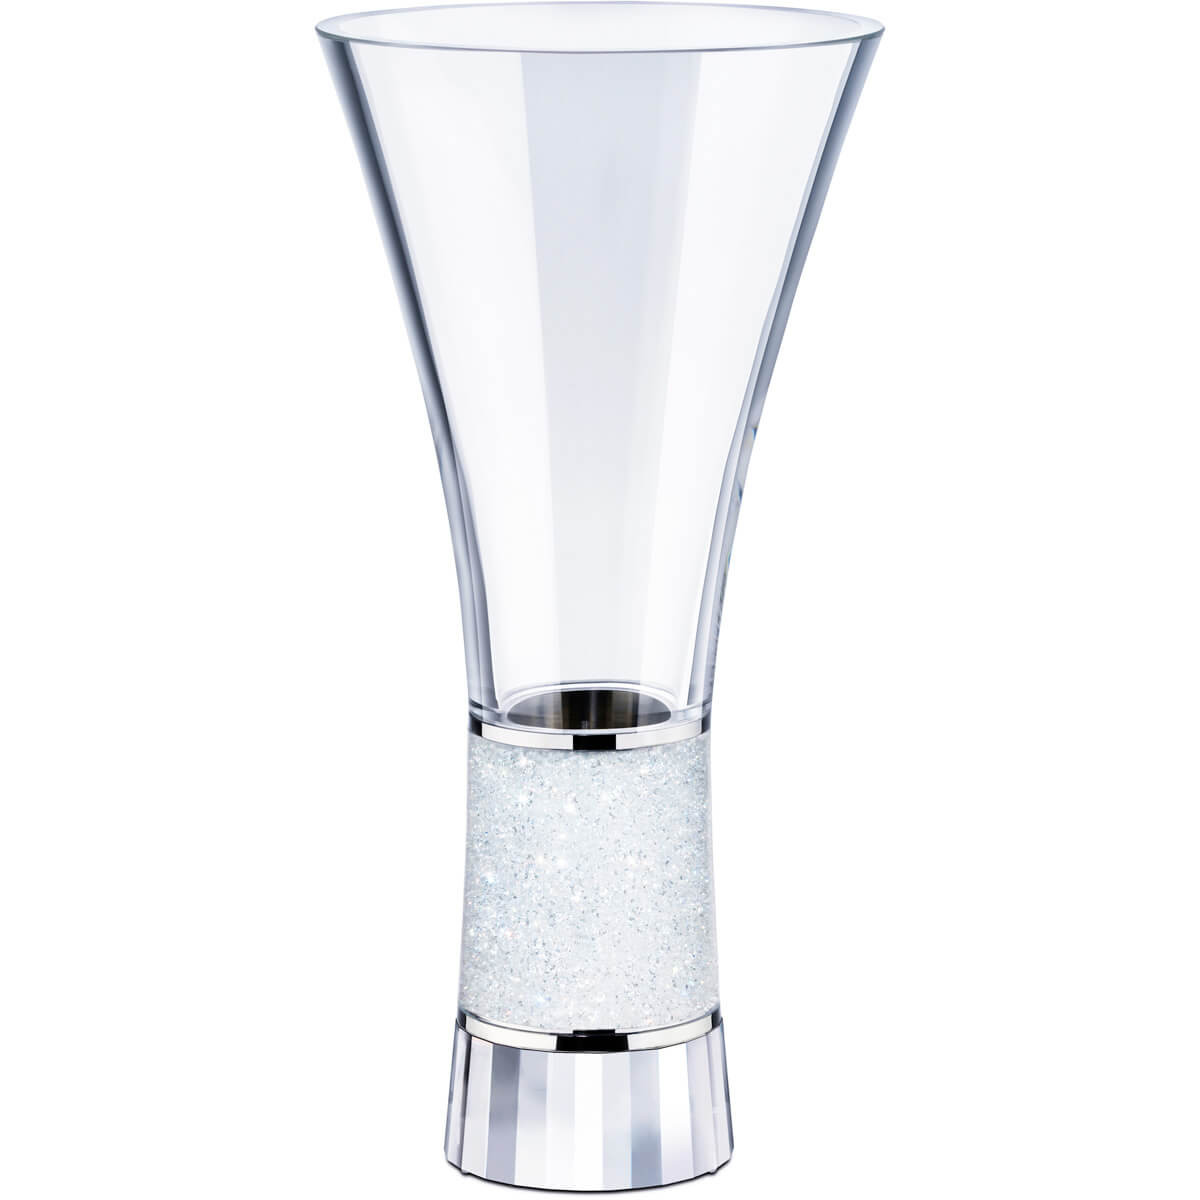 Champagne Flutes with Vase Holder Of Crystalline Vase Exclusively On Swarovski Com In Crystalline Vase